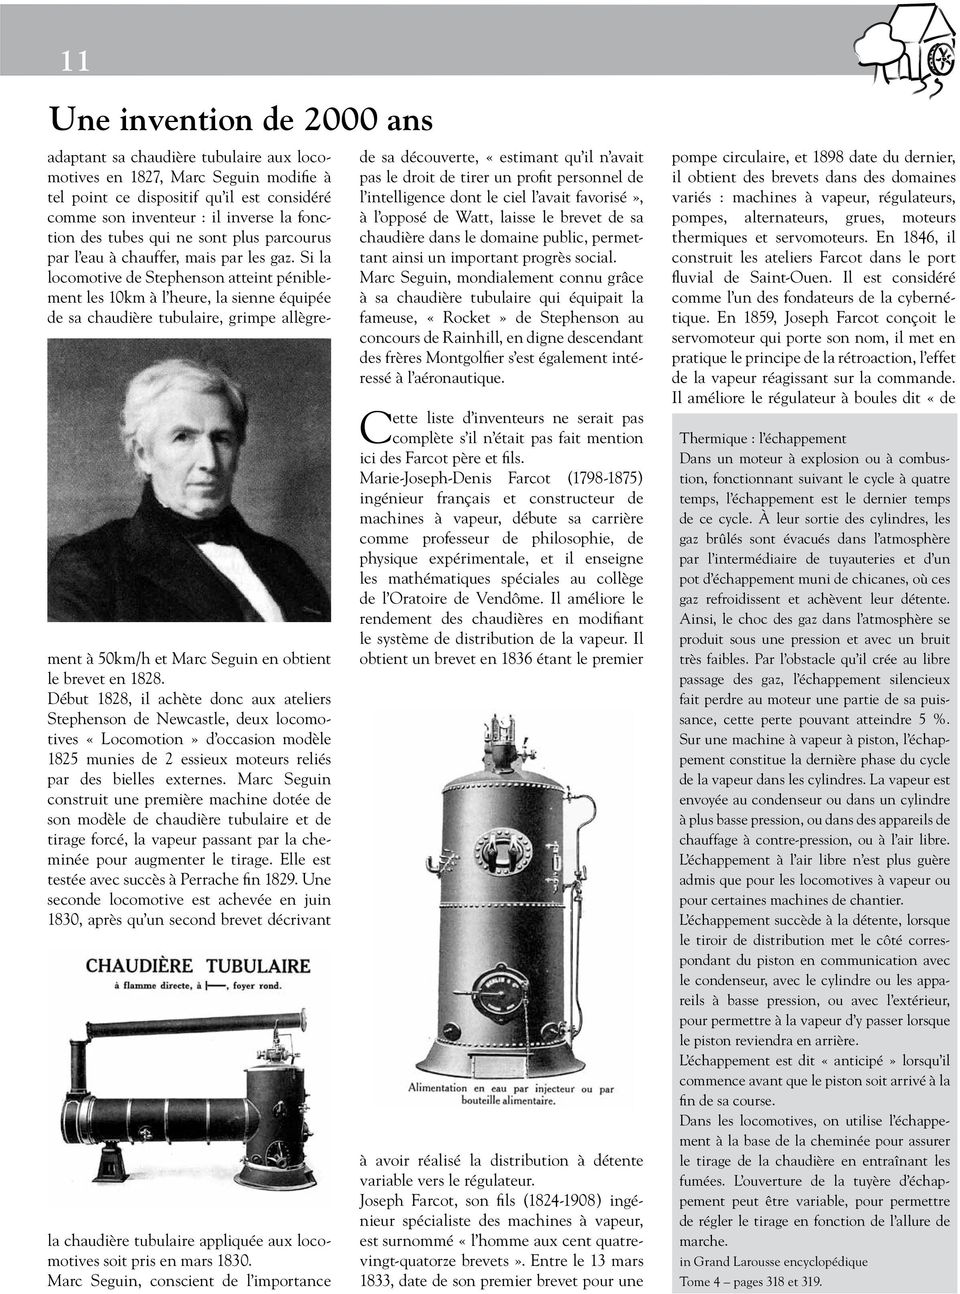 Si la locomotive de Stephenson atteint péniblement les 10km à l heure, la sienne équipée de sa chaudière tubulaire, grimpe allègrement à 50km/h et Marc Seguin en obtient le brevet en 1828.